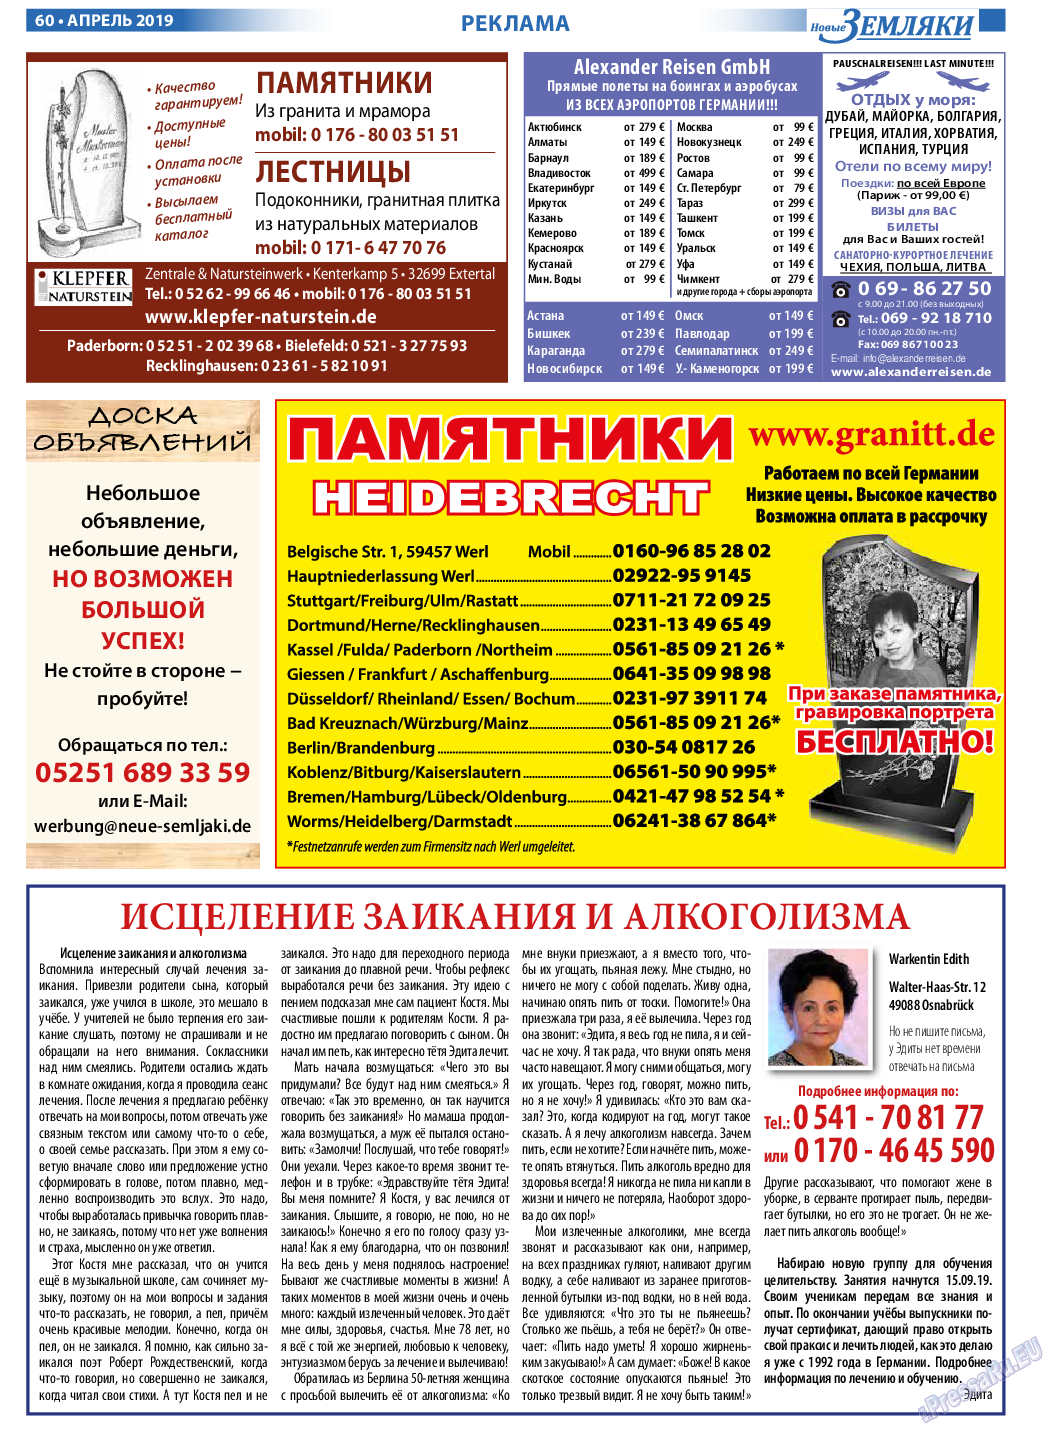 Новые Земляки, газета. 2019 №4 стр.60